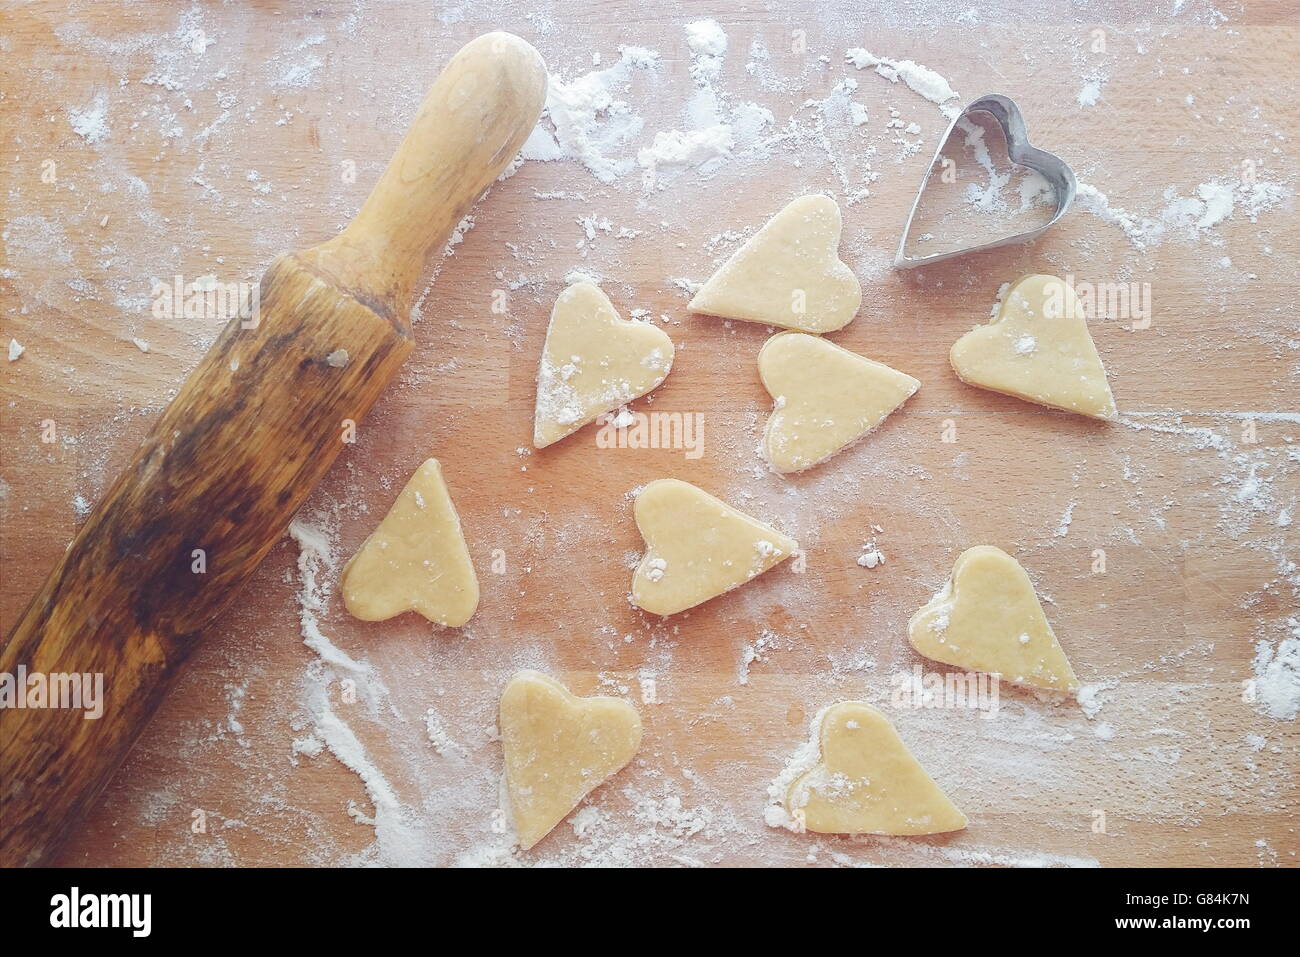 Des biscuits en forme de coeur avec rouleau à pâtisserie et emporte-pièce Banque D'Images